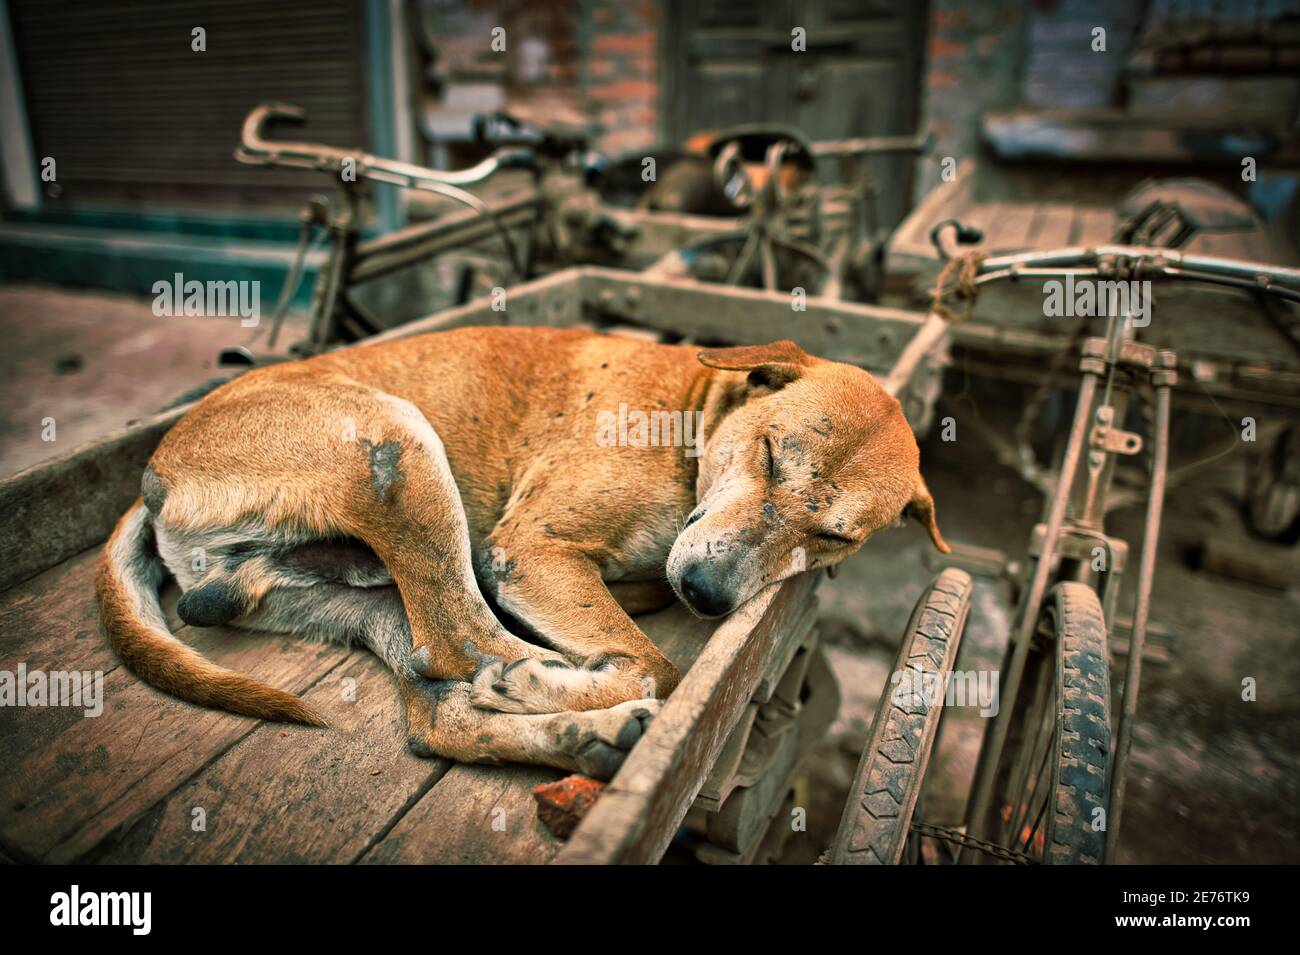 El perro tiene heridas llenas, dormir cómodamente en un triciclo giratorio. Foto de stock